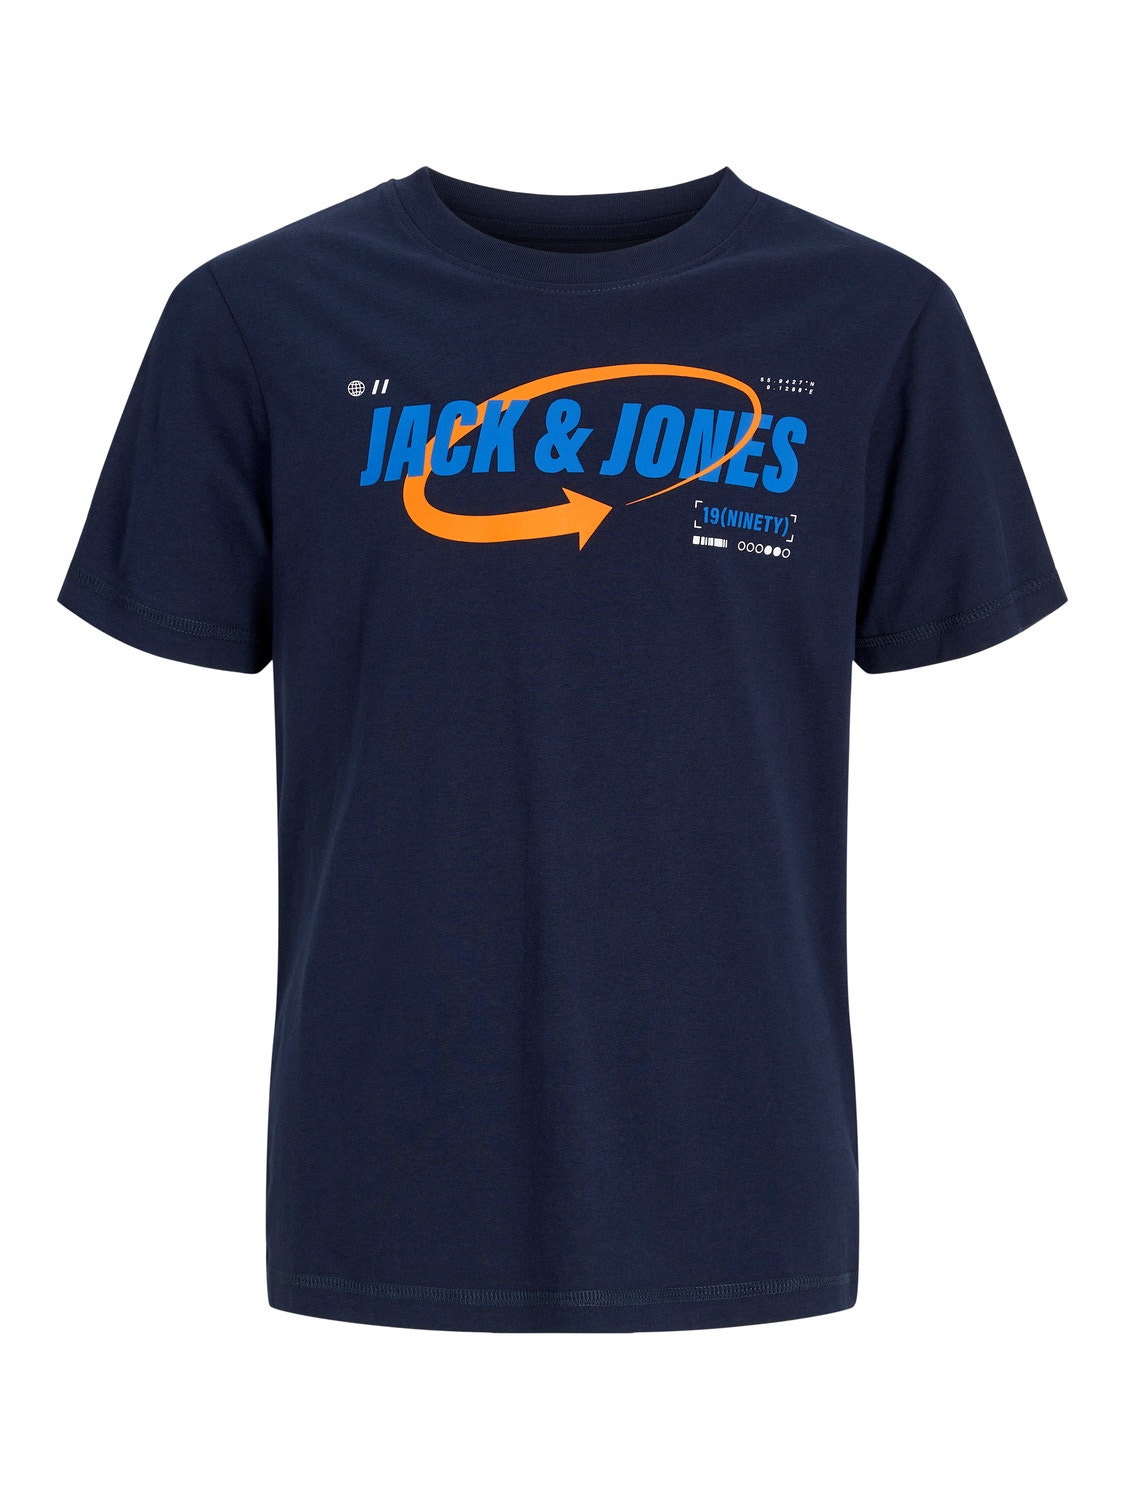 Jack & Jones Logo T-shirt Für jungs -Navy Blazer - 12247642